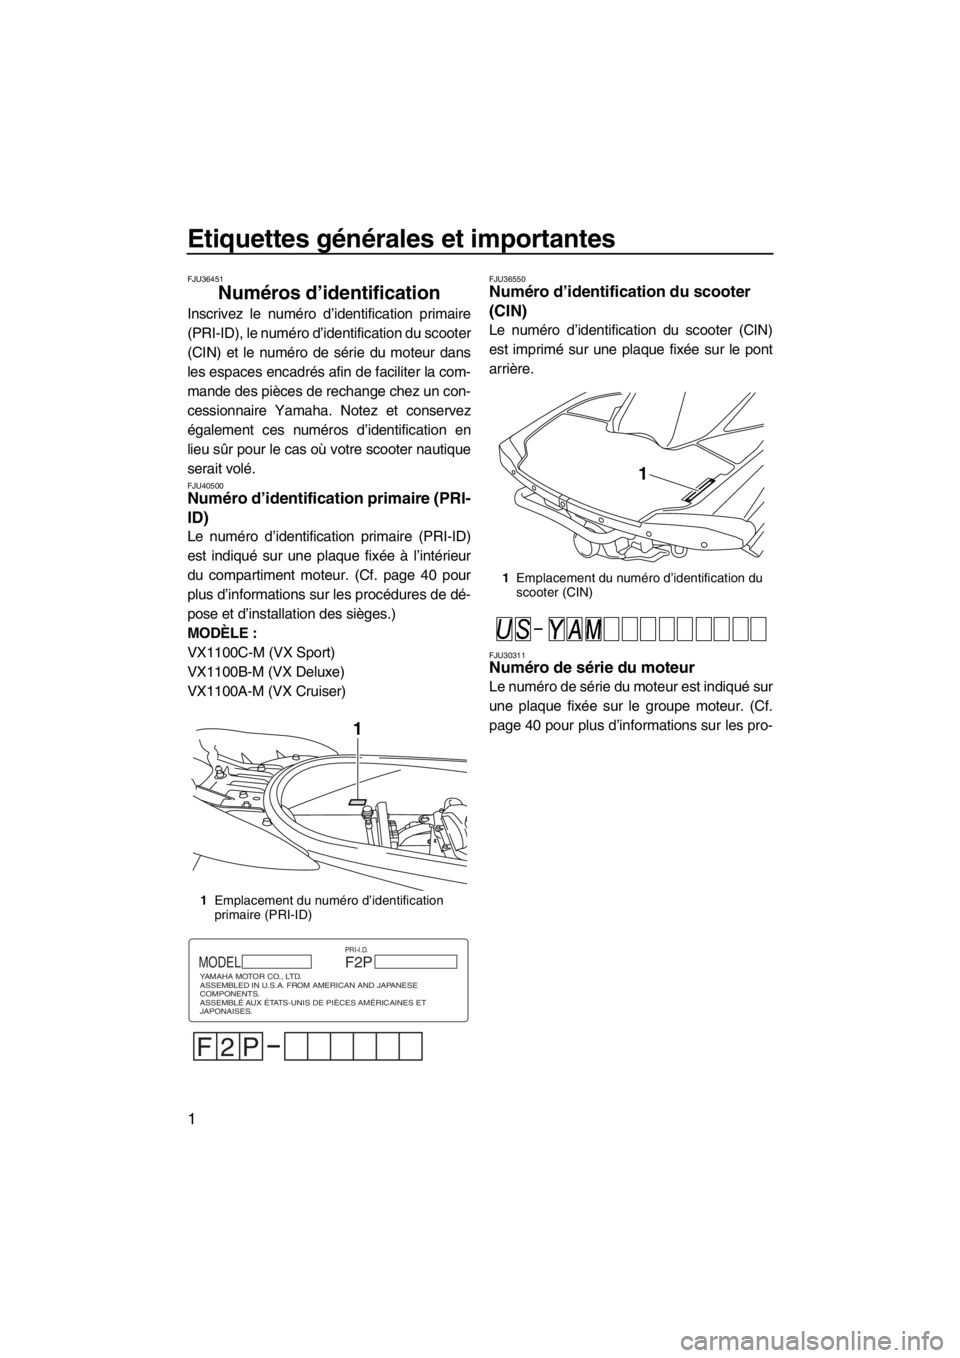 YAMAHA VX 2013  Notices Demploi (in French) Etiquettes générales et importantes
1
FJU36451
Numéros d’identification 
Inscrivez le numéro d’identification primaire
(PRI-ID), le numéro d’identification du scooter
(CIN) et le numéro de